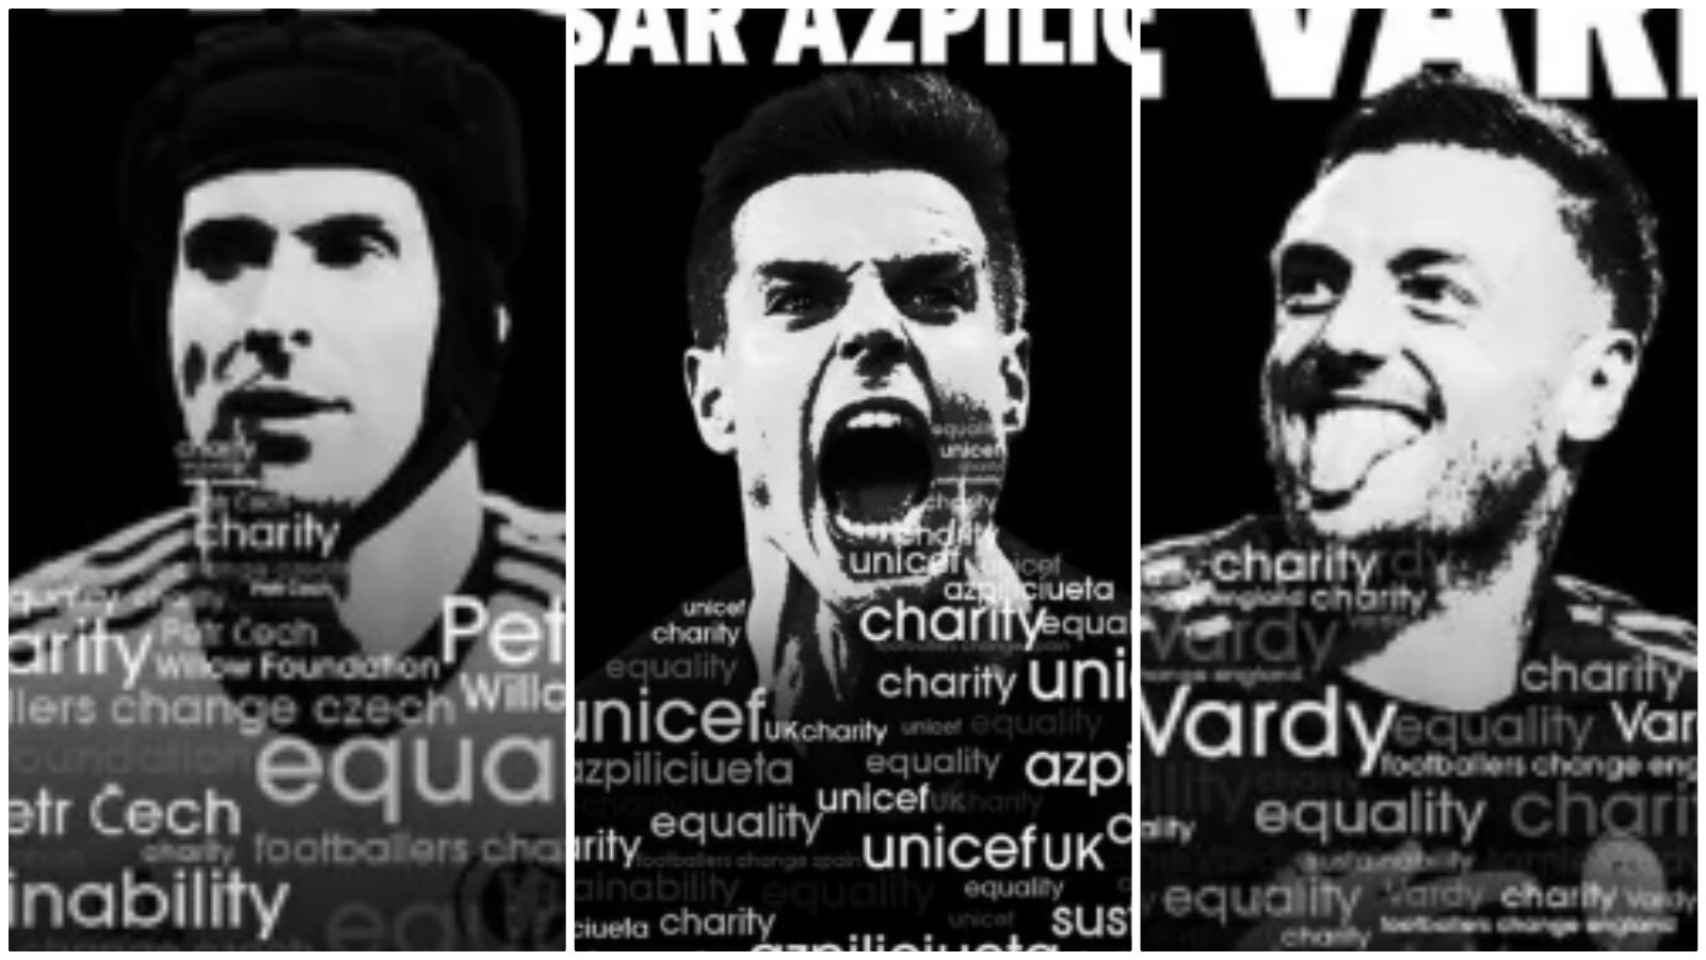 Los carteles de Petr Cech, César Azpilicueta y Jamie Vardy en Footballers4change